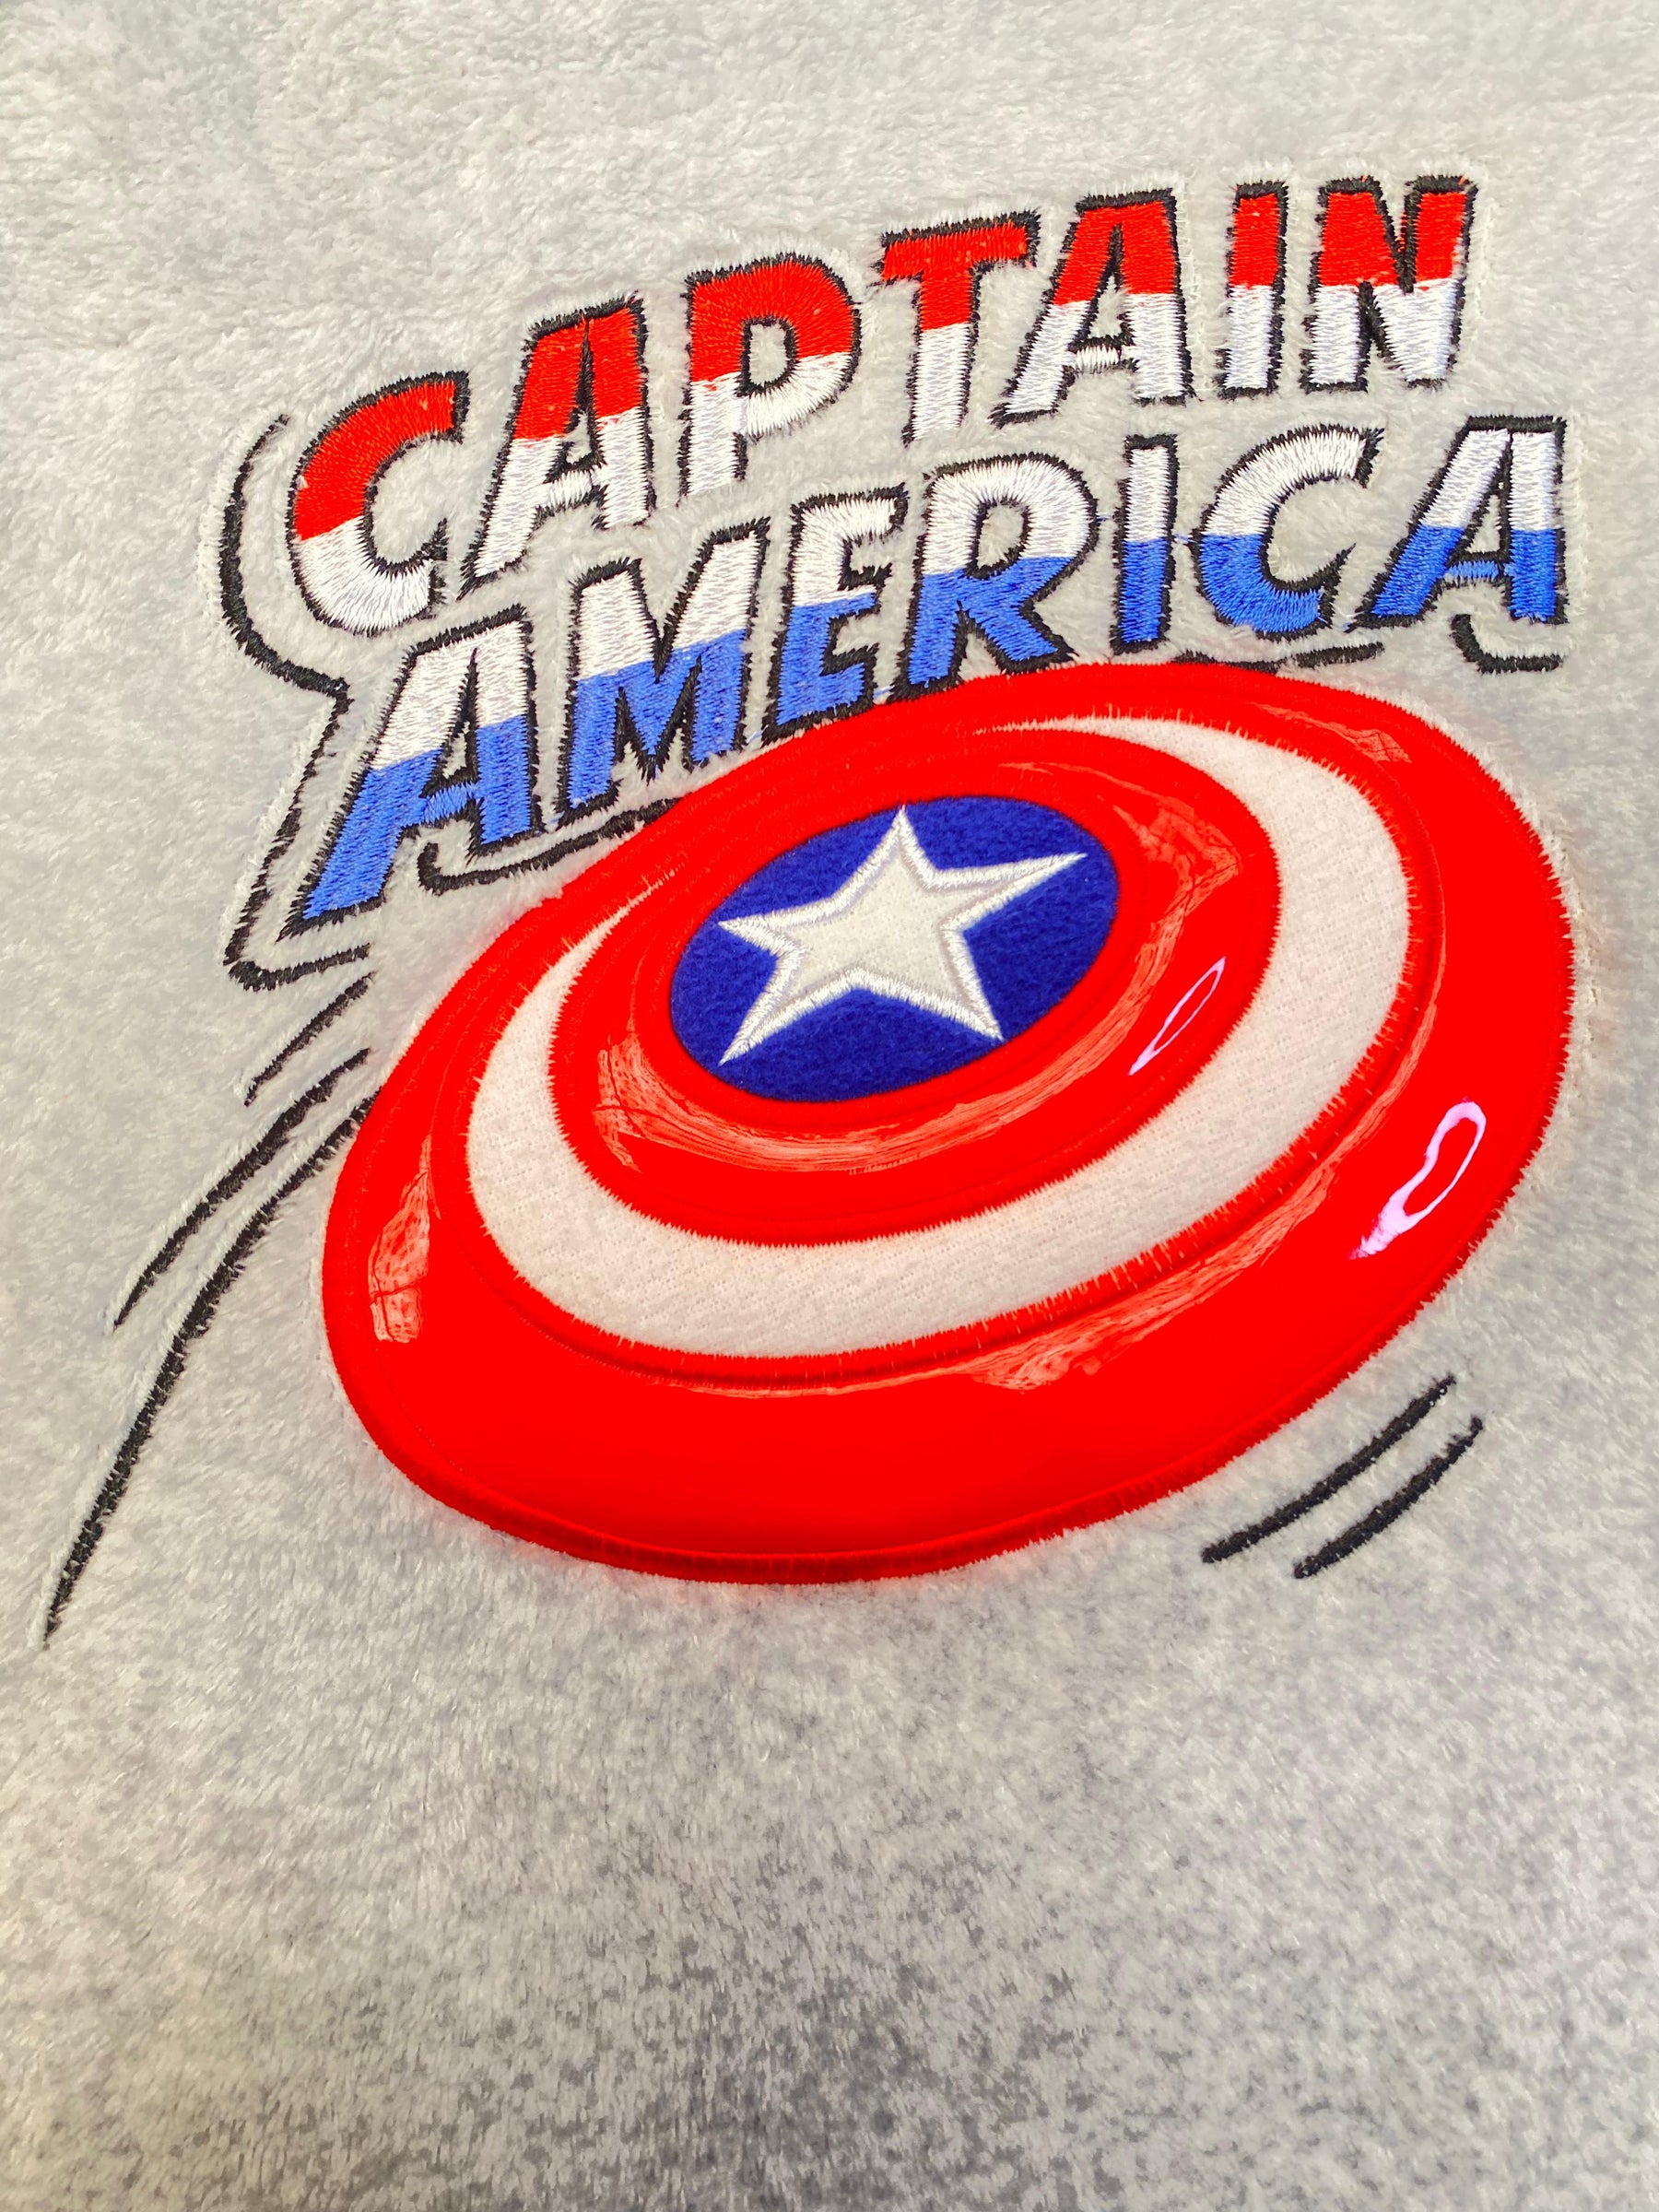 Captain America fleece pj